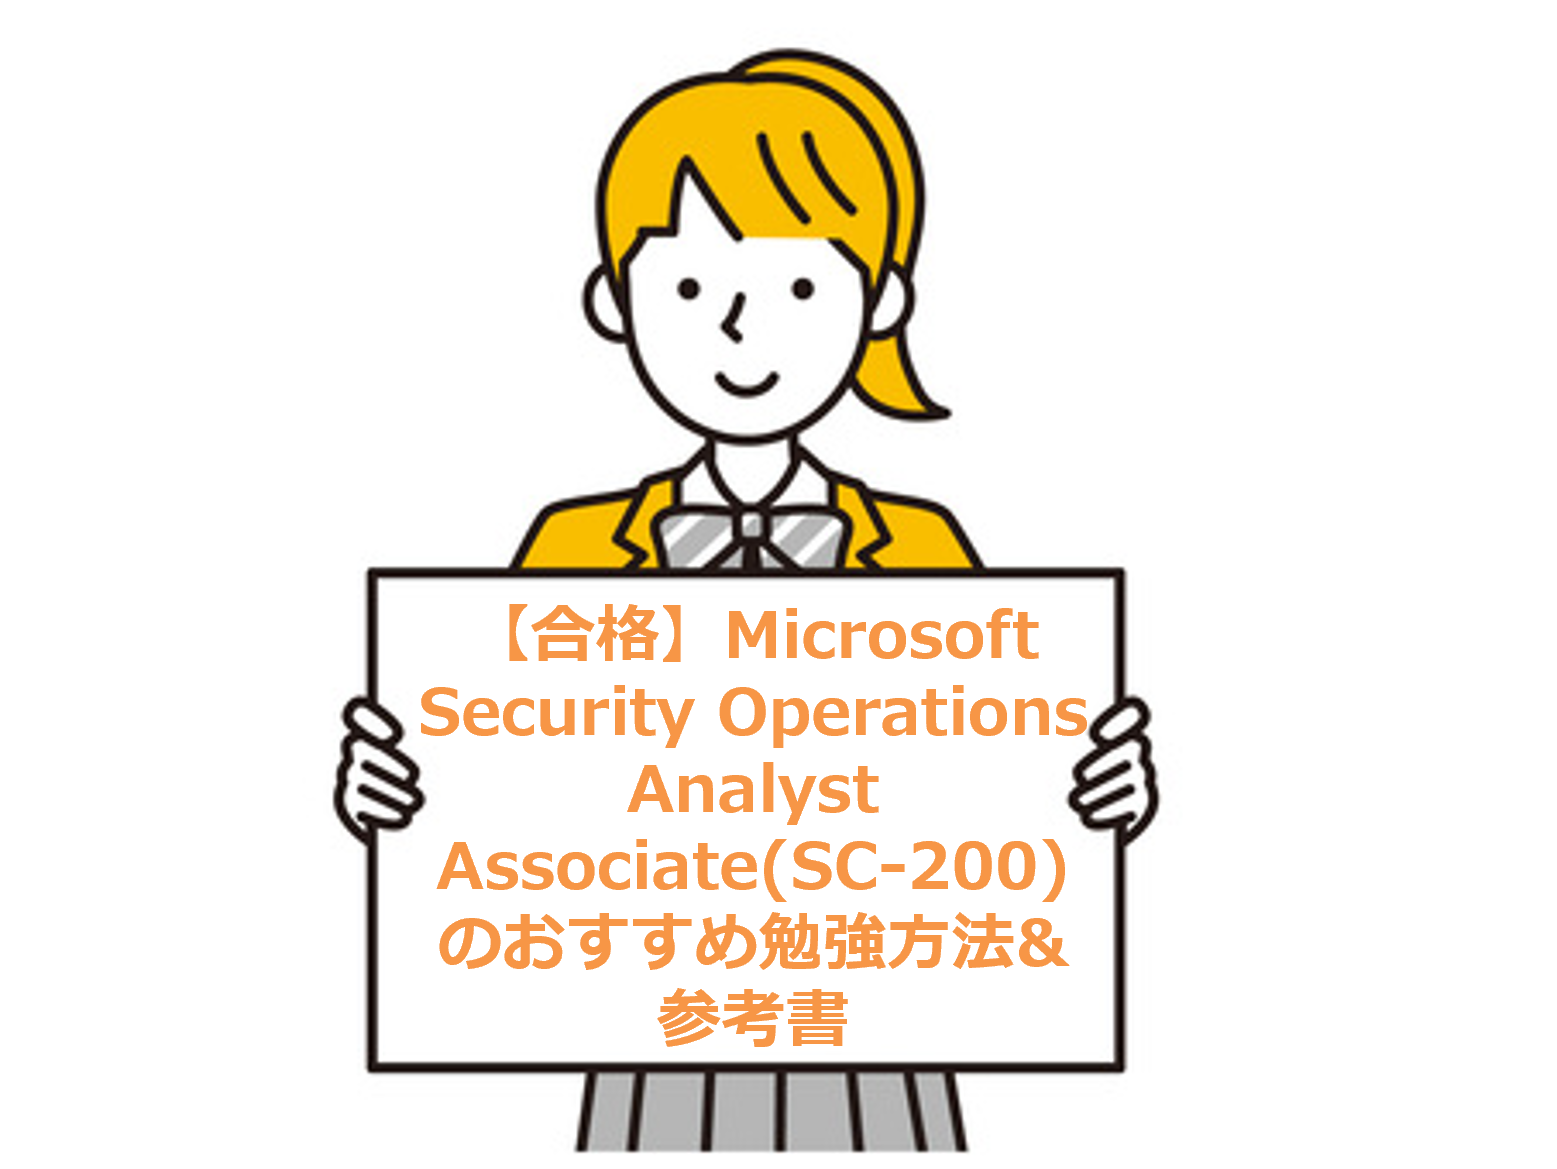 【合格】Microsoft Security Operations Analyst Associate(SC-200)のおすすめ勉強方法&参考書